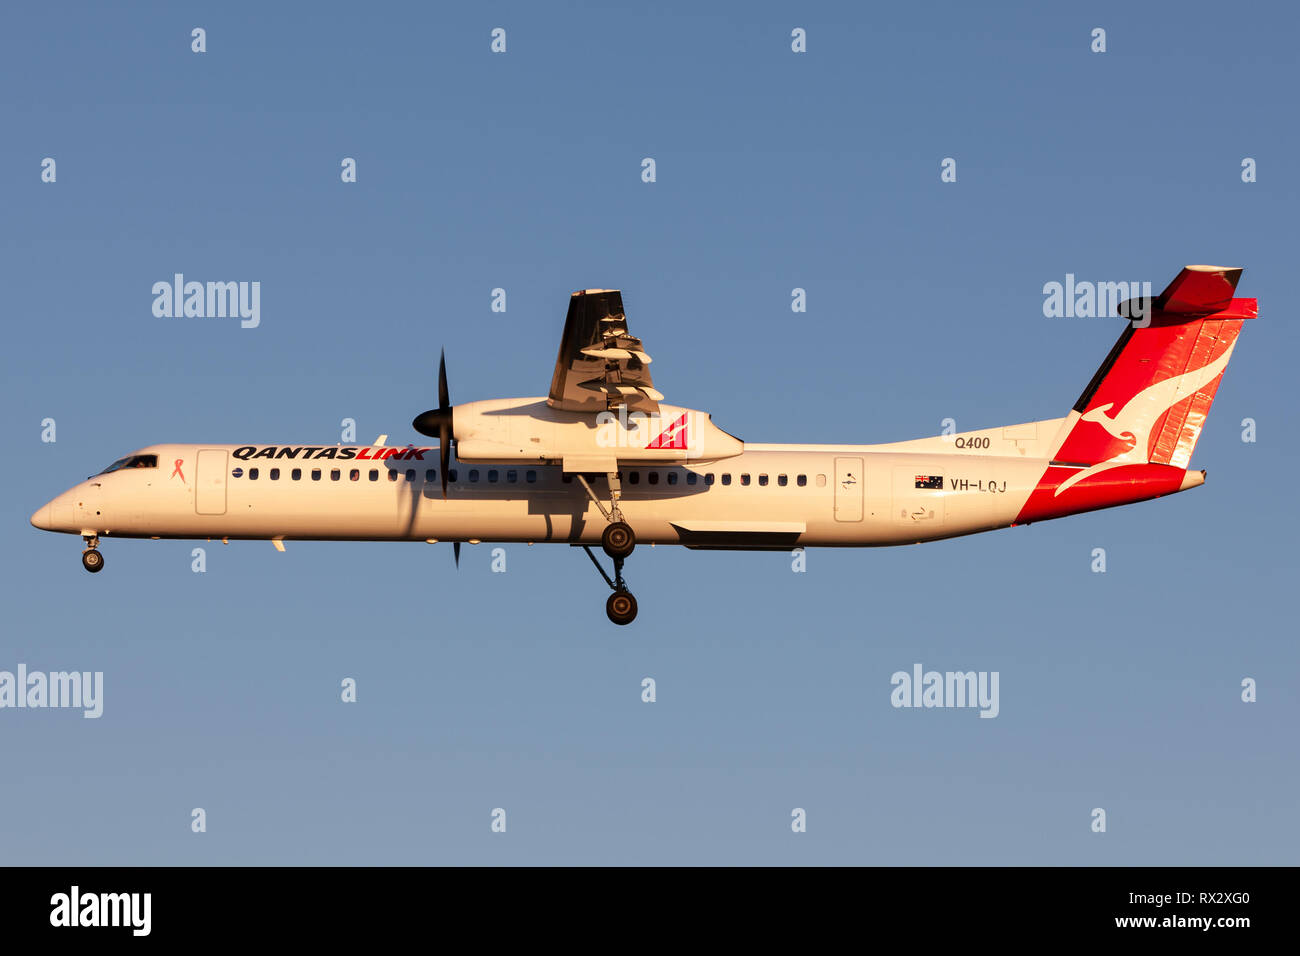 QantasLink (Sunstate Airlines) Bombardier DHC -8-402 zweimotorige Turboprop regional Airliner auf Ansatz am Adelaide Flughafen zu landen. Stockfoto